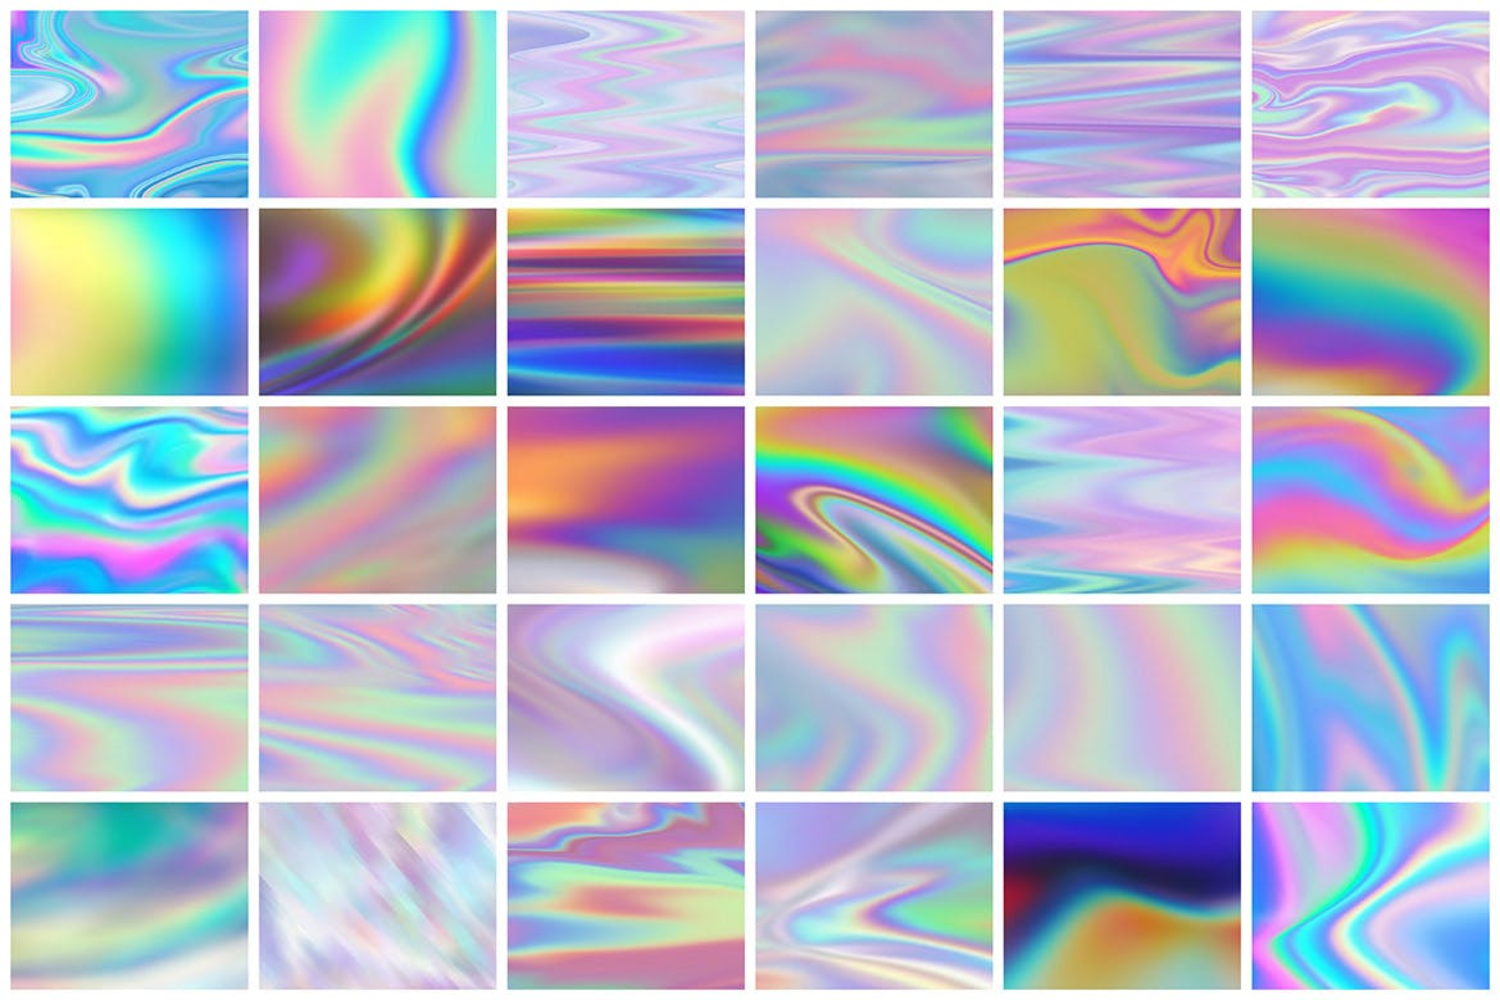 3727 30款高清炫彩抽象镭射彩虹金属扭曲渐变纹理背景底纹图片设计素材 Iridescent Abstract Backgrounds